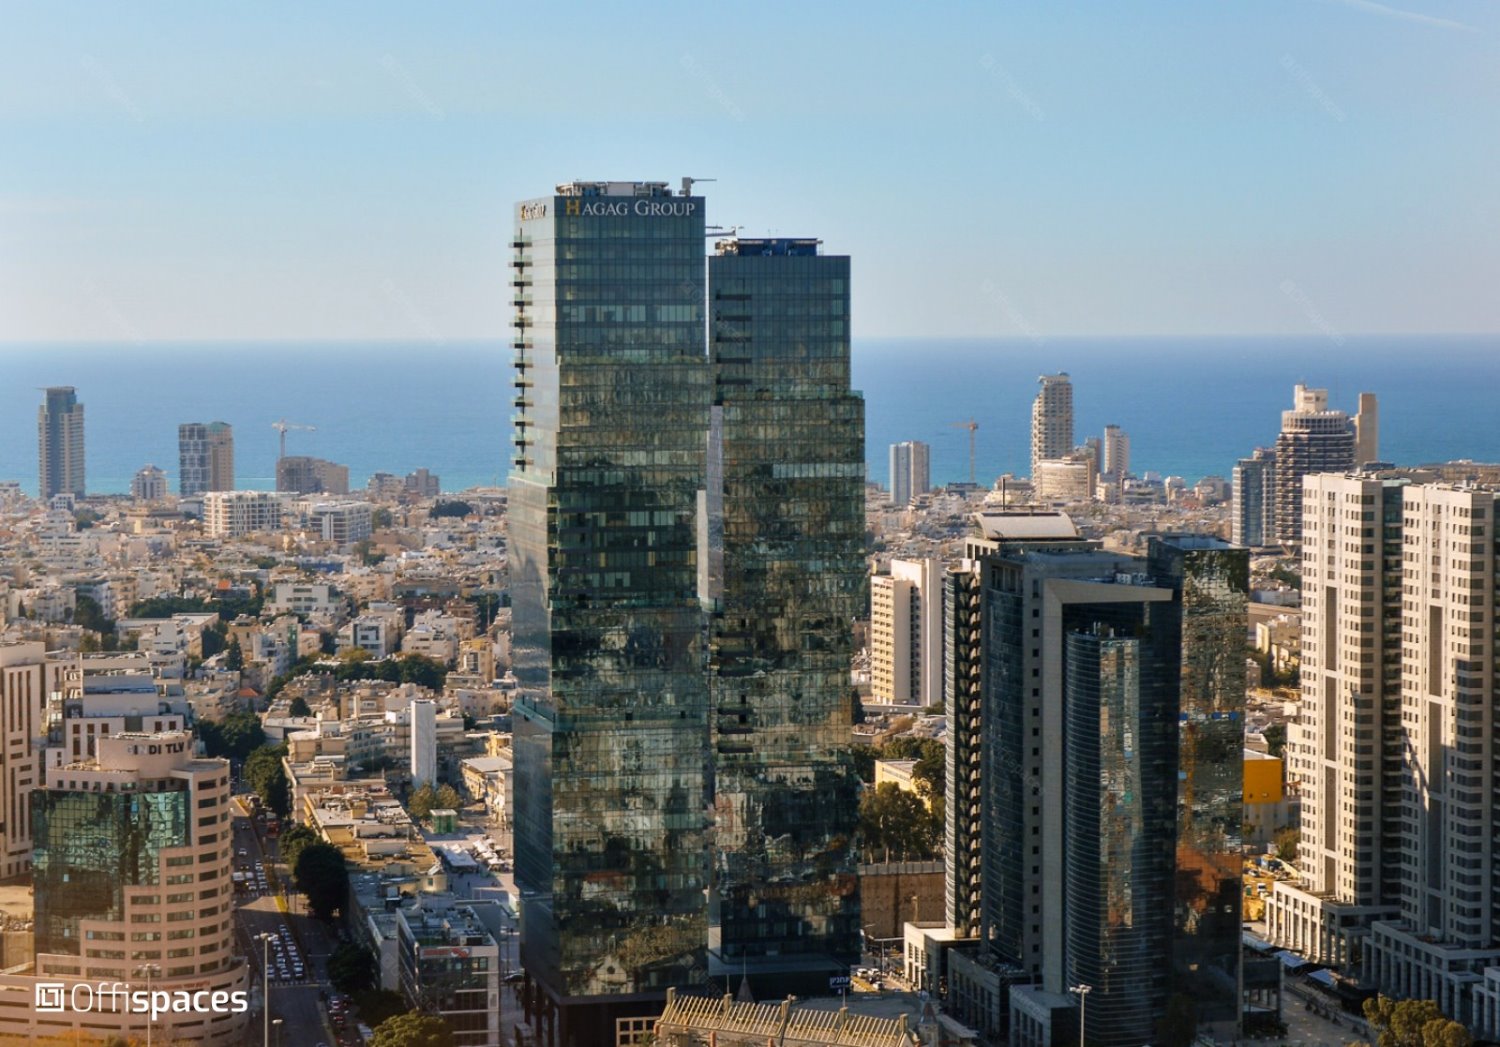 (מיקום משרדי החברה - מגדלי הארבעה תל אביב(צילום OFFISPACES)